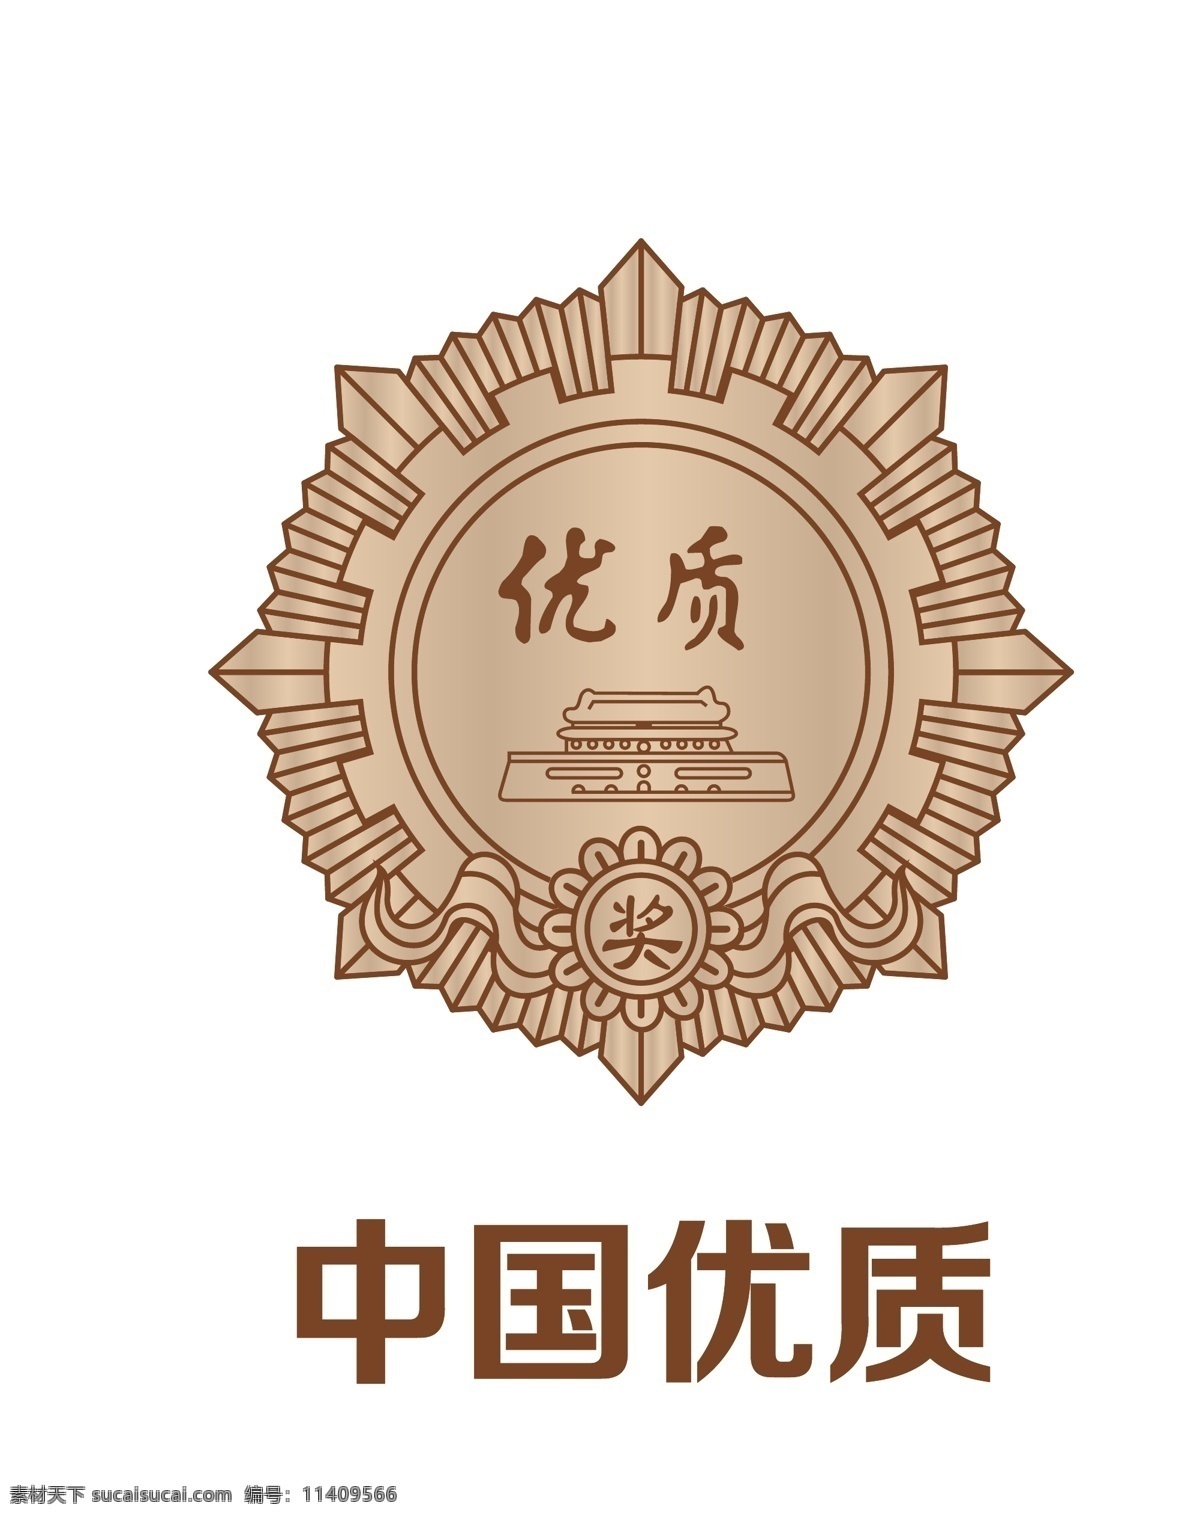 中国 优质 奖章 logo 优质产品奖章 中国优质 酒类产品奖章 产品奖章 标志图标 公共标识标志